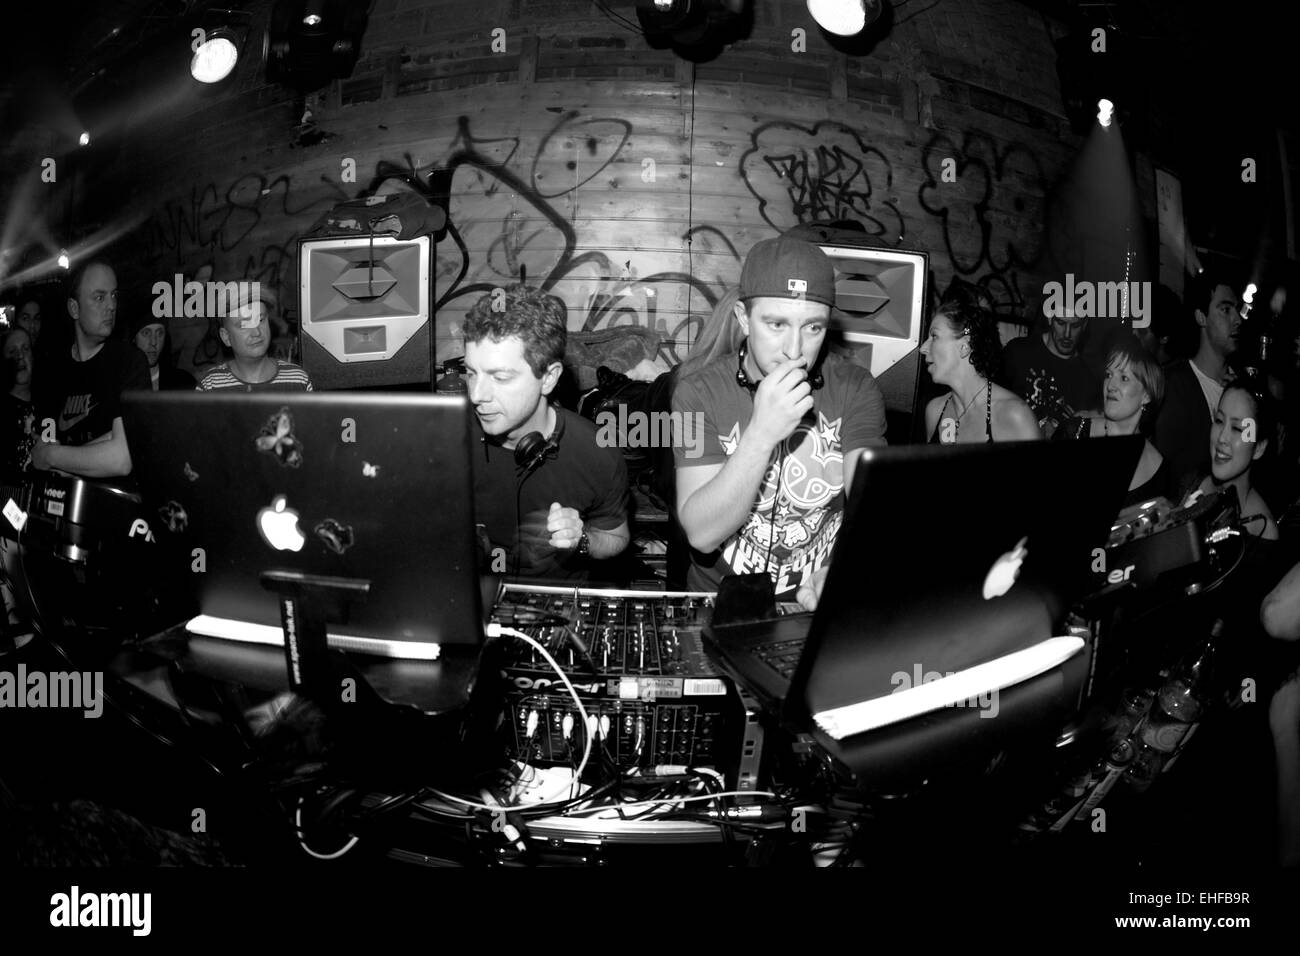 Layo und Bushwacka DJing in der Shake It Club-Nacht in einem Lagerhaus in großen Suffolk Street London 2009. Stockfoto